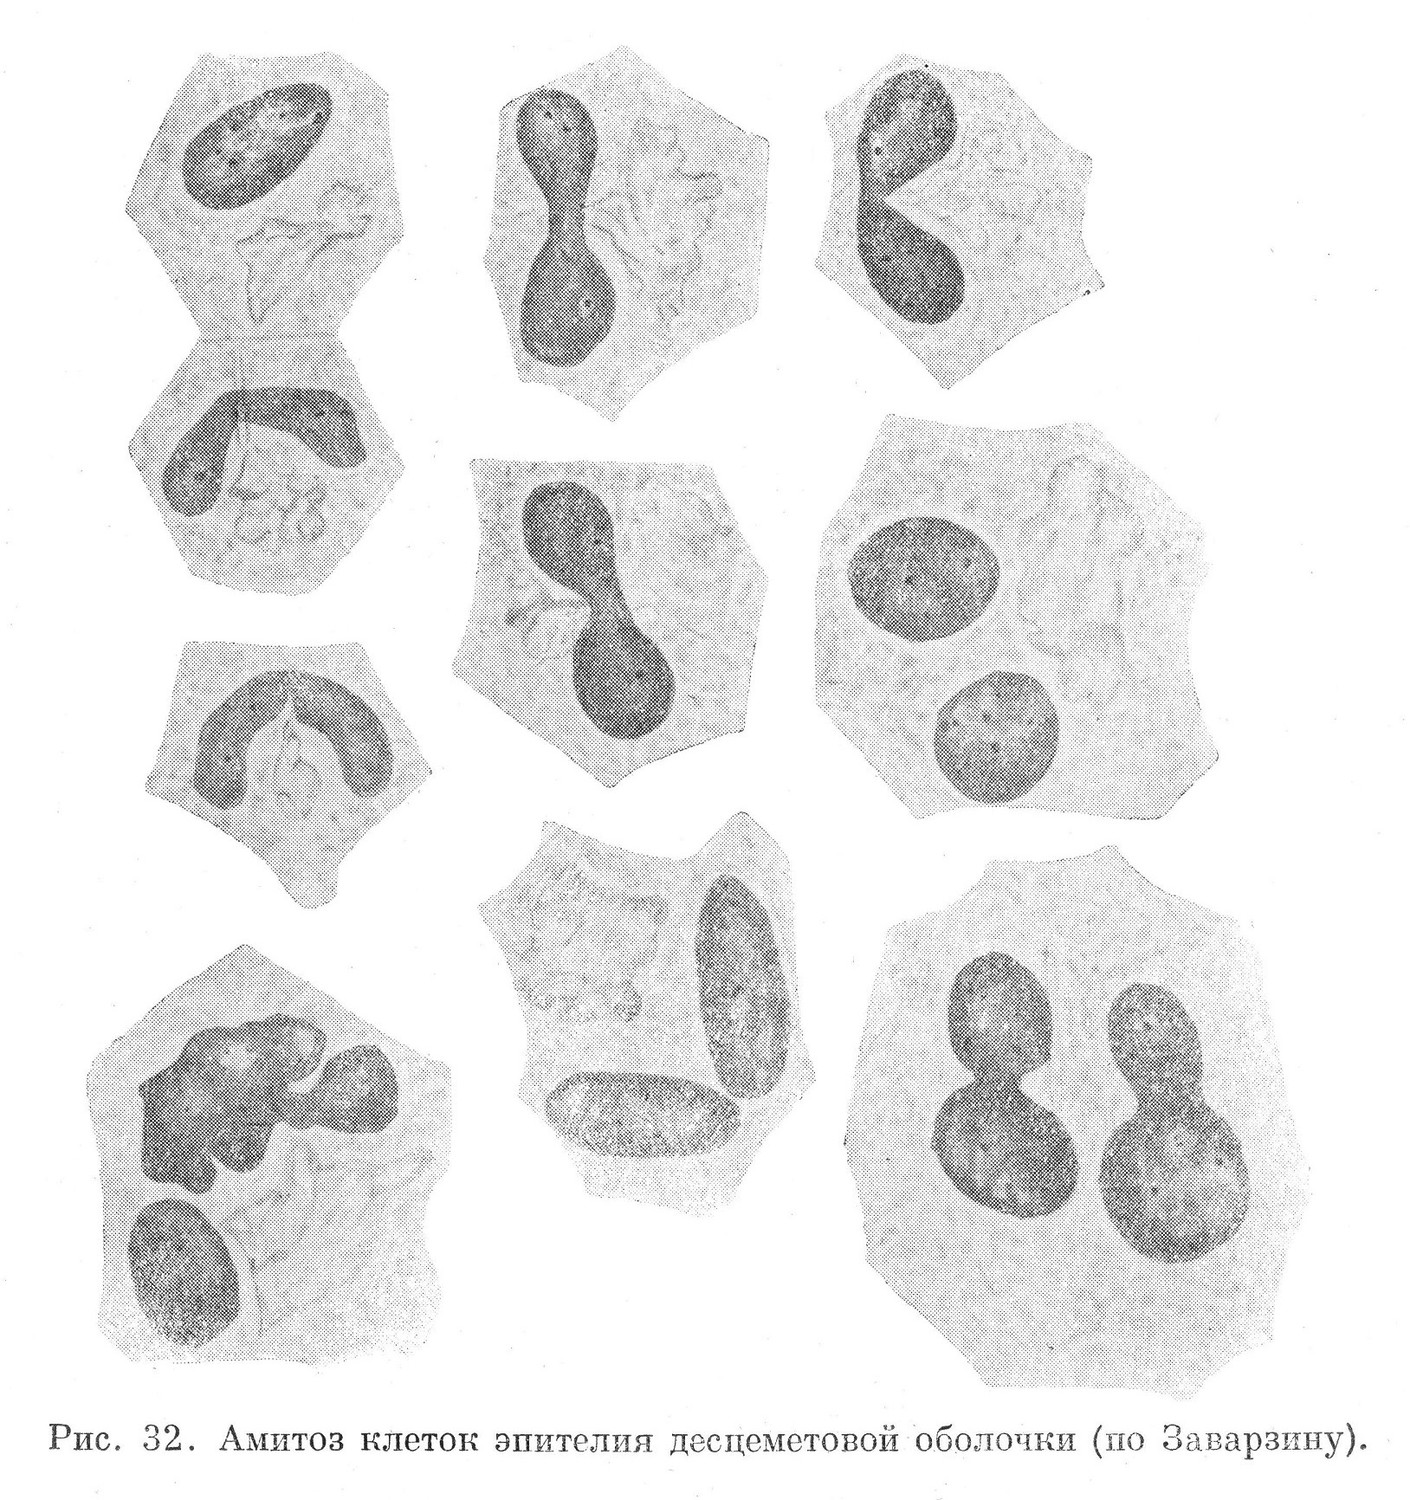 Амитоз клеток эпителия десцеметовой оболочки 